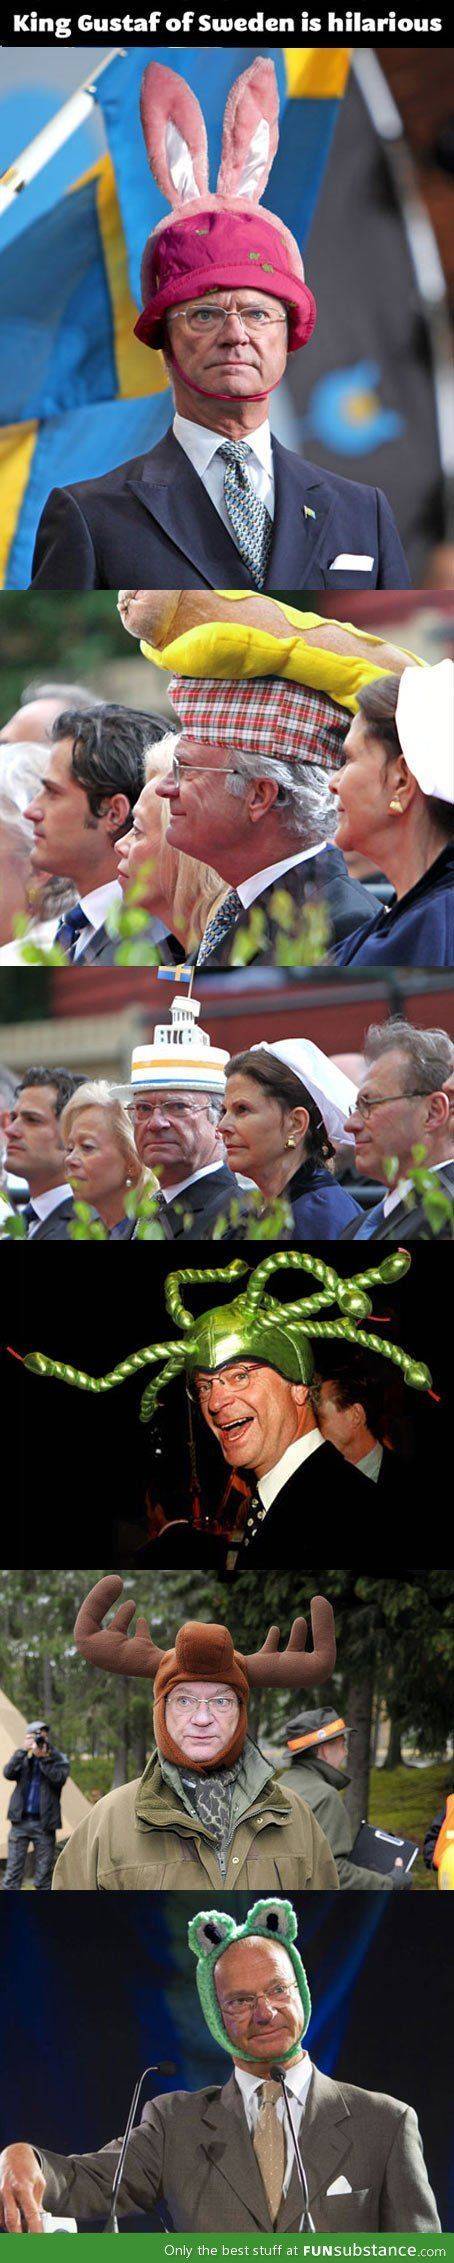 모자 덕후 스웨덴 국왕.jpg